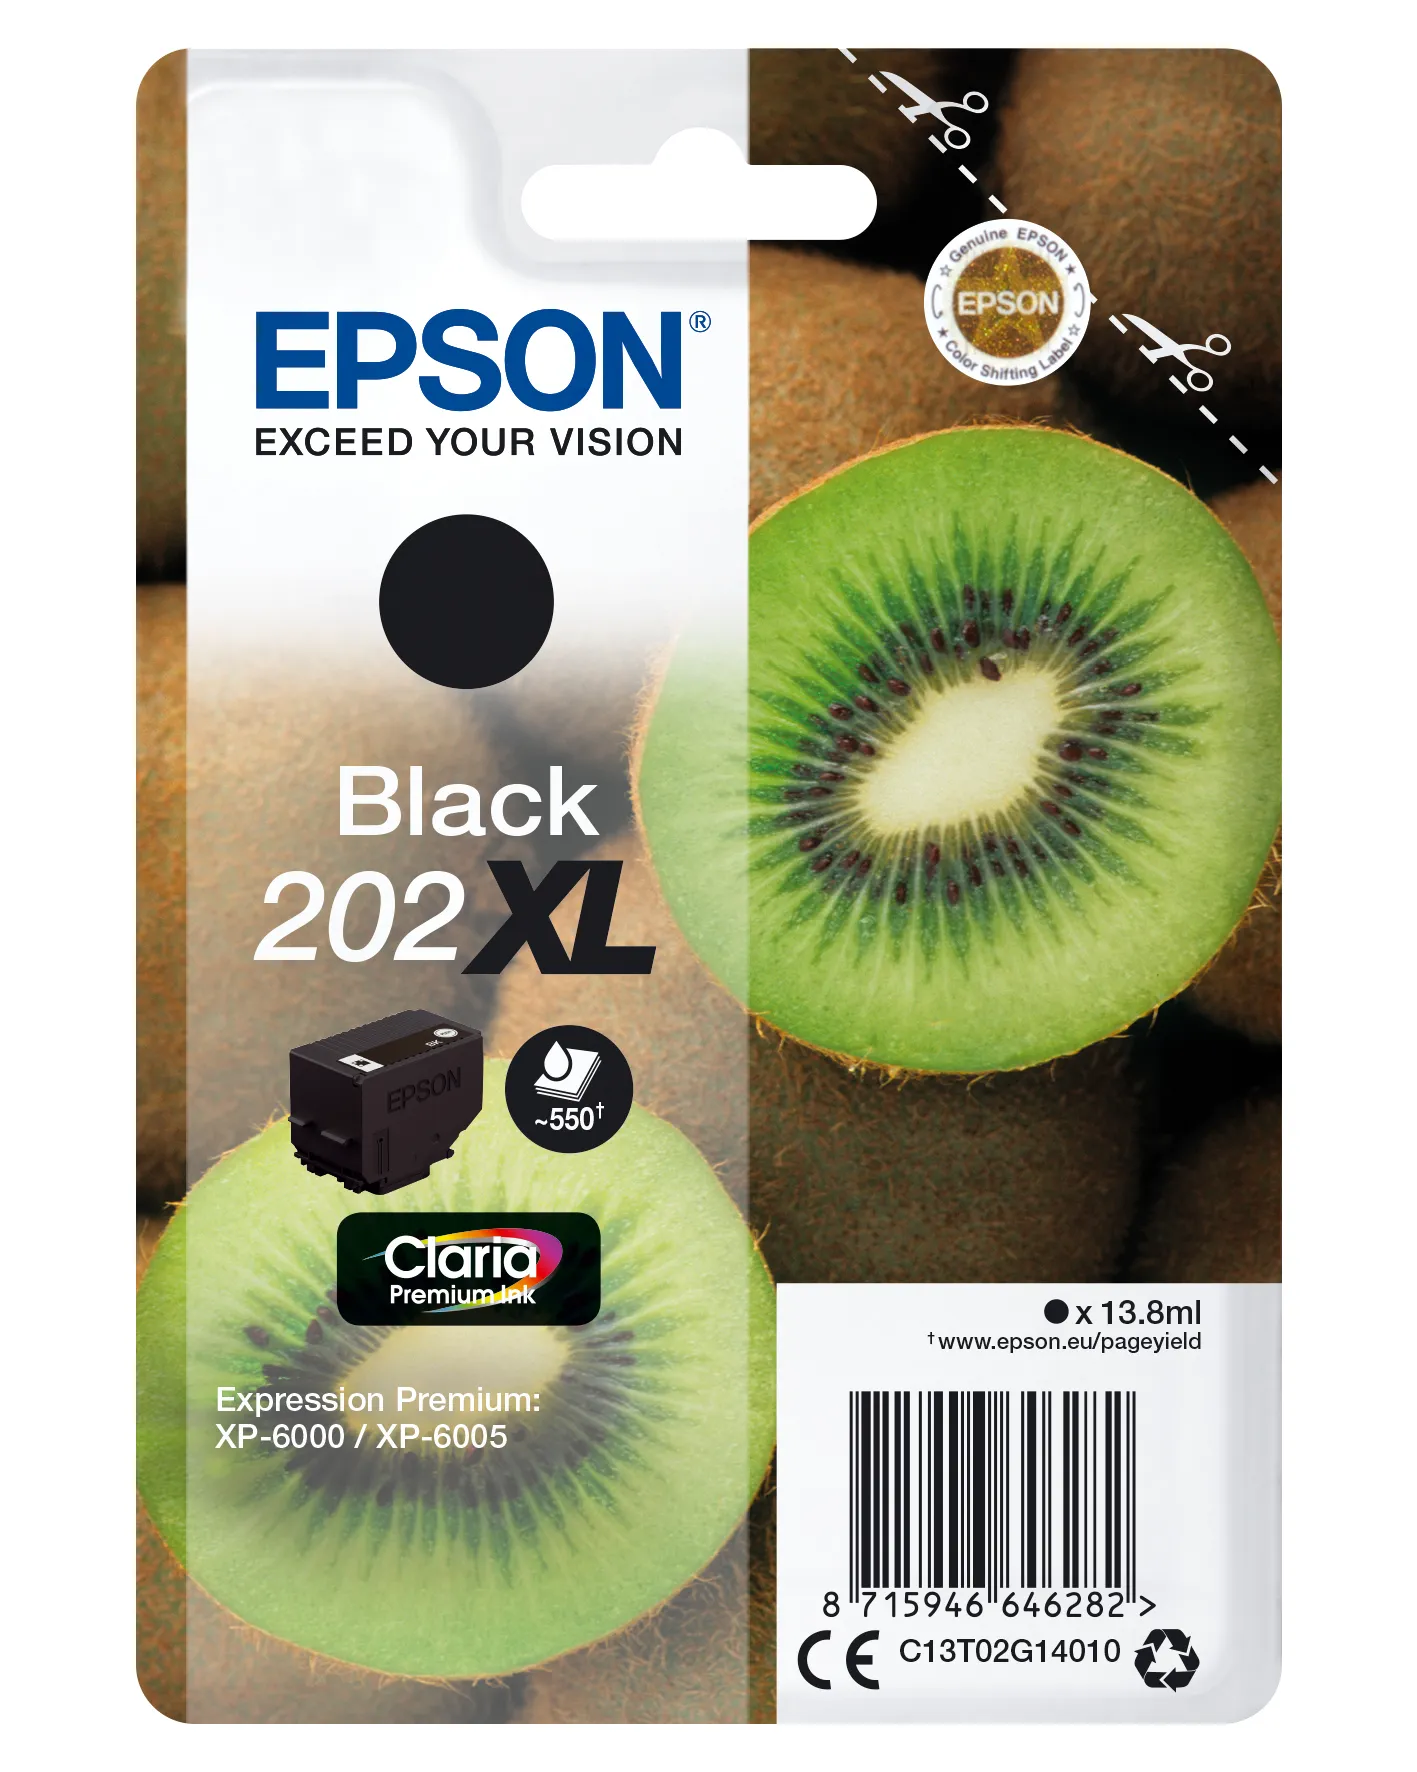 Vente EPSON 202XL Black Ink Cartridge (with security Epson au meilleur prix - visuel 4